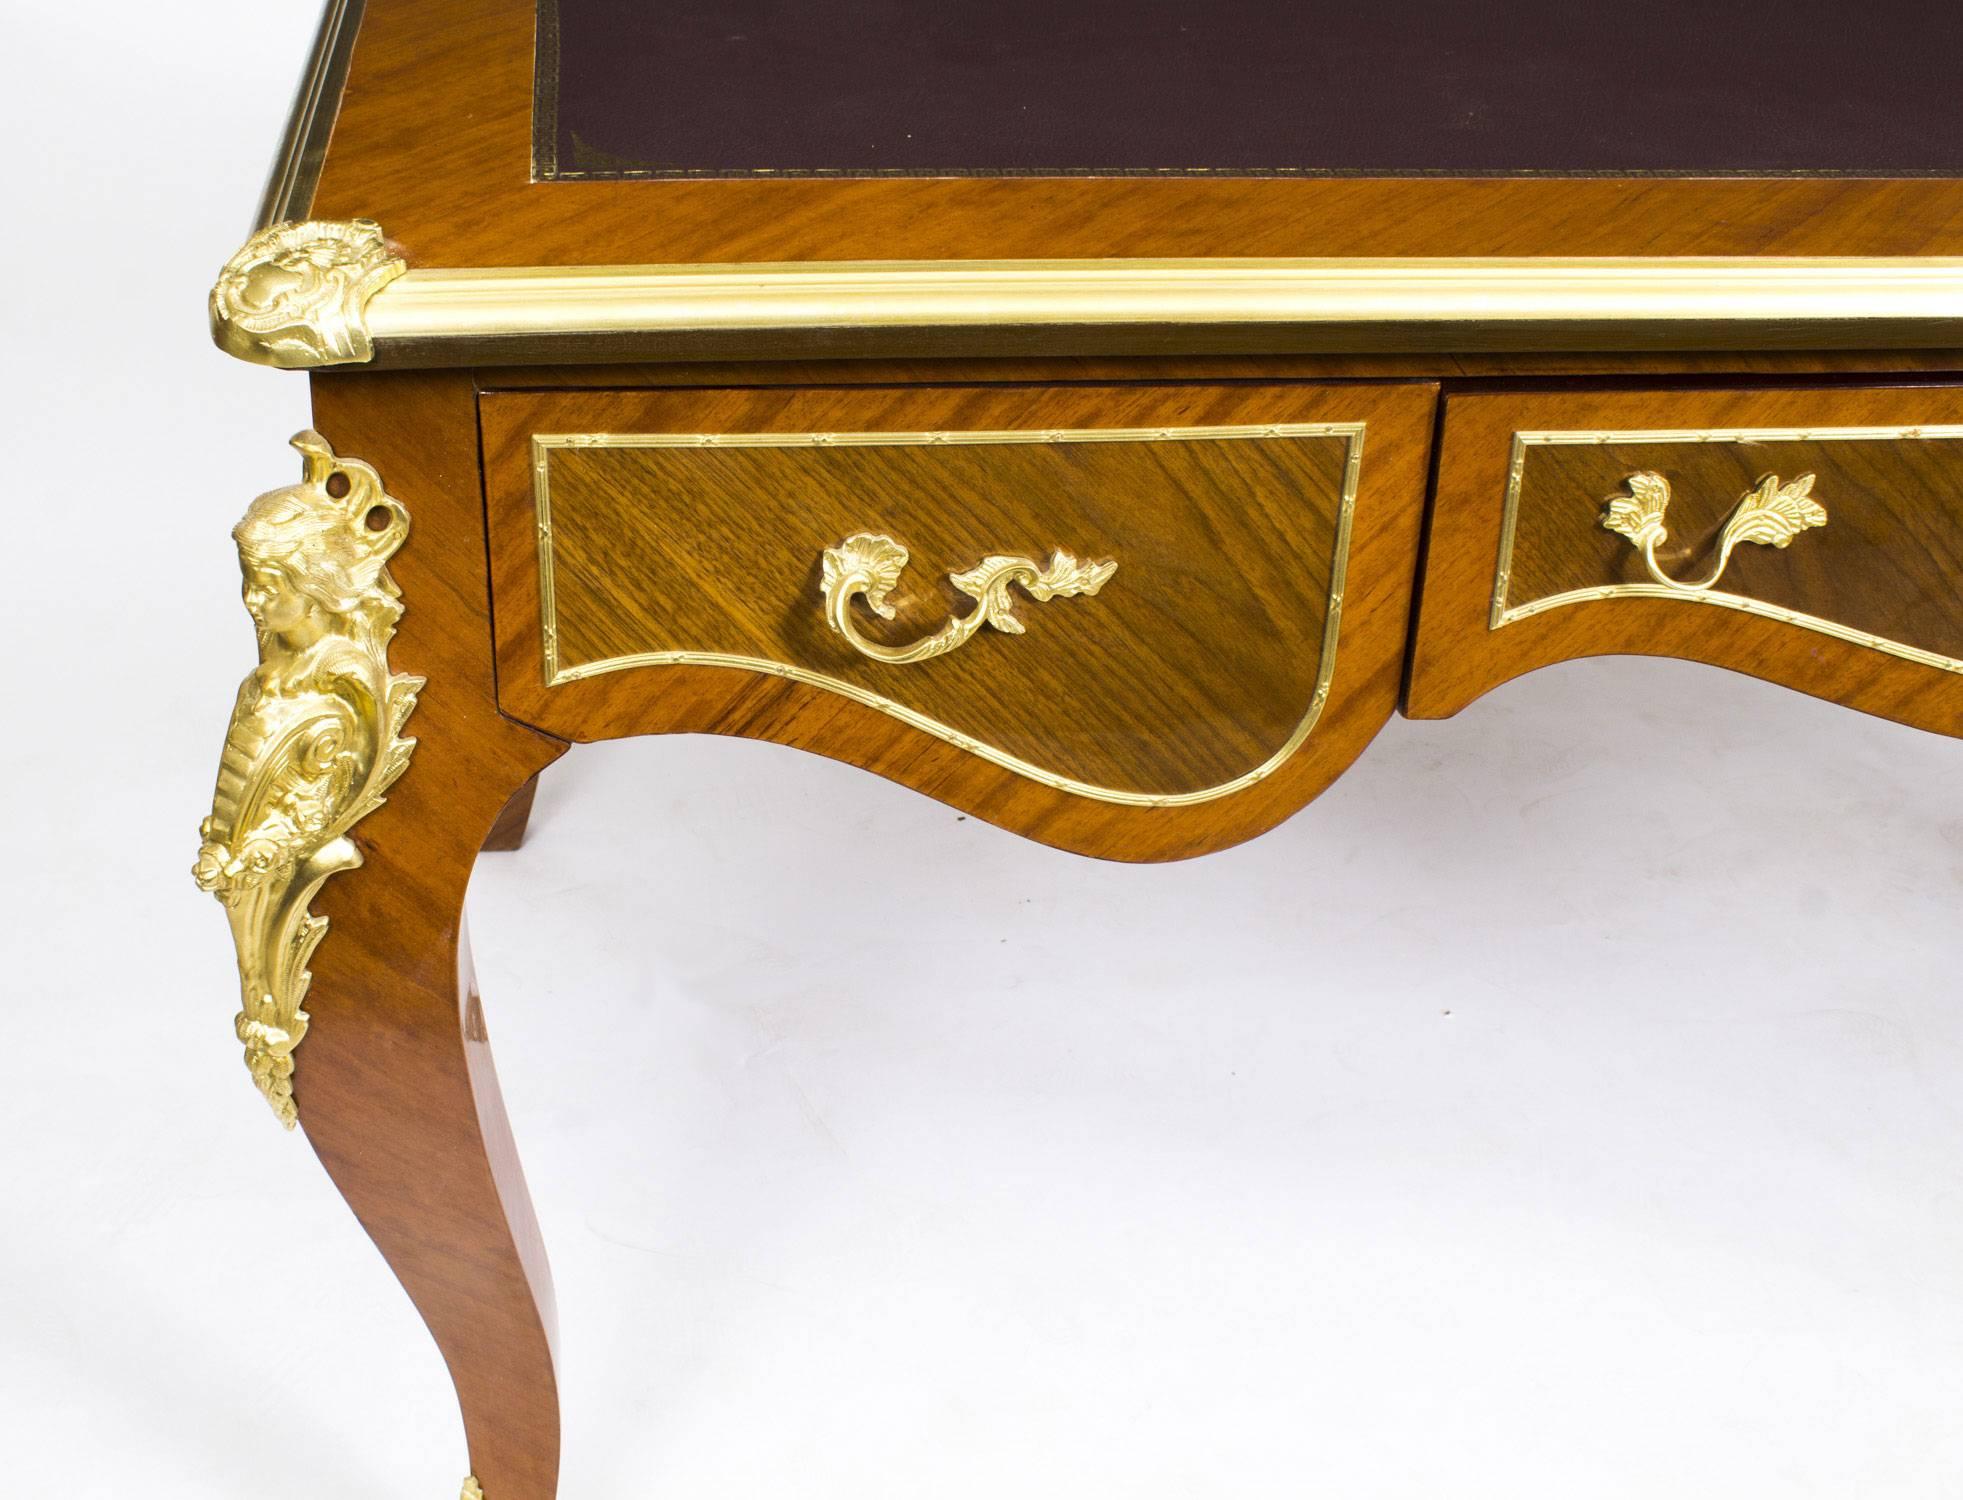 Vintage Louis Revival Kingwood Bureau Plat Writing Table Desk 1